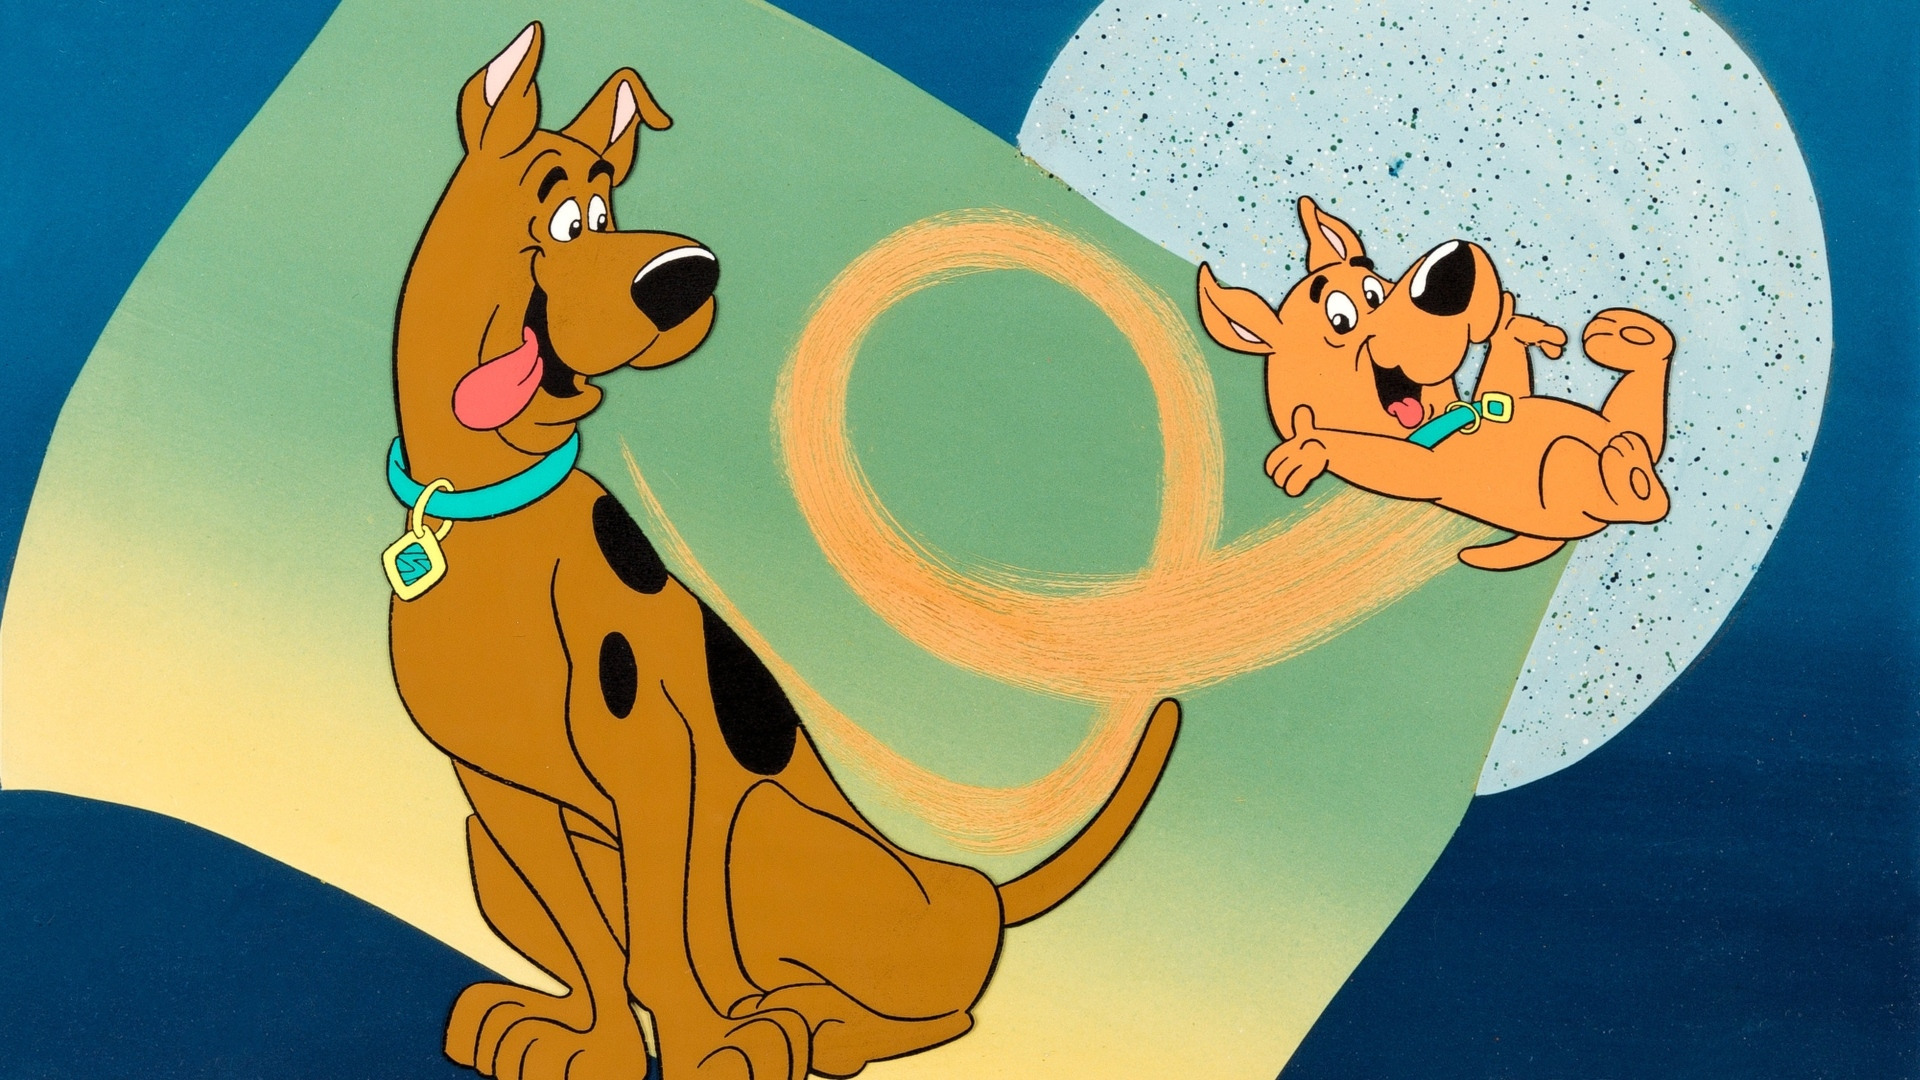 Cartoon Scooby and Scrappy-Doo